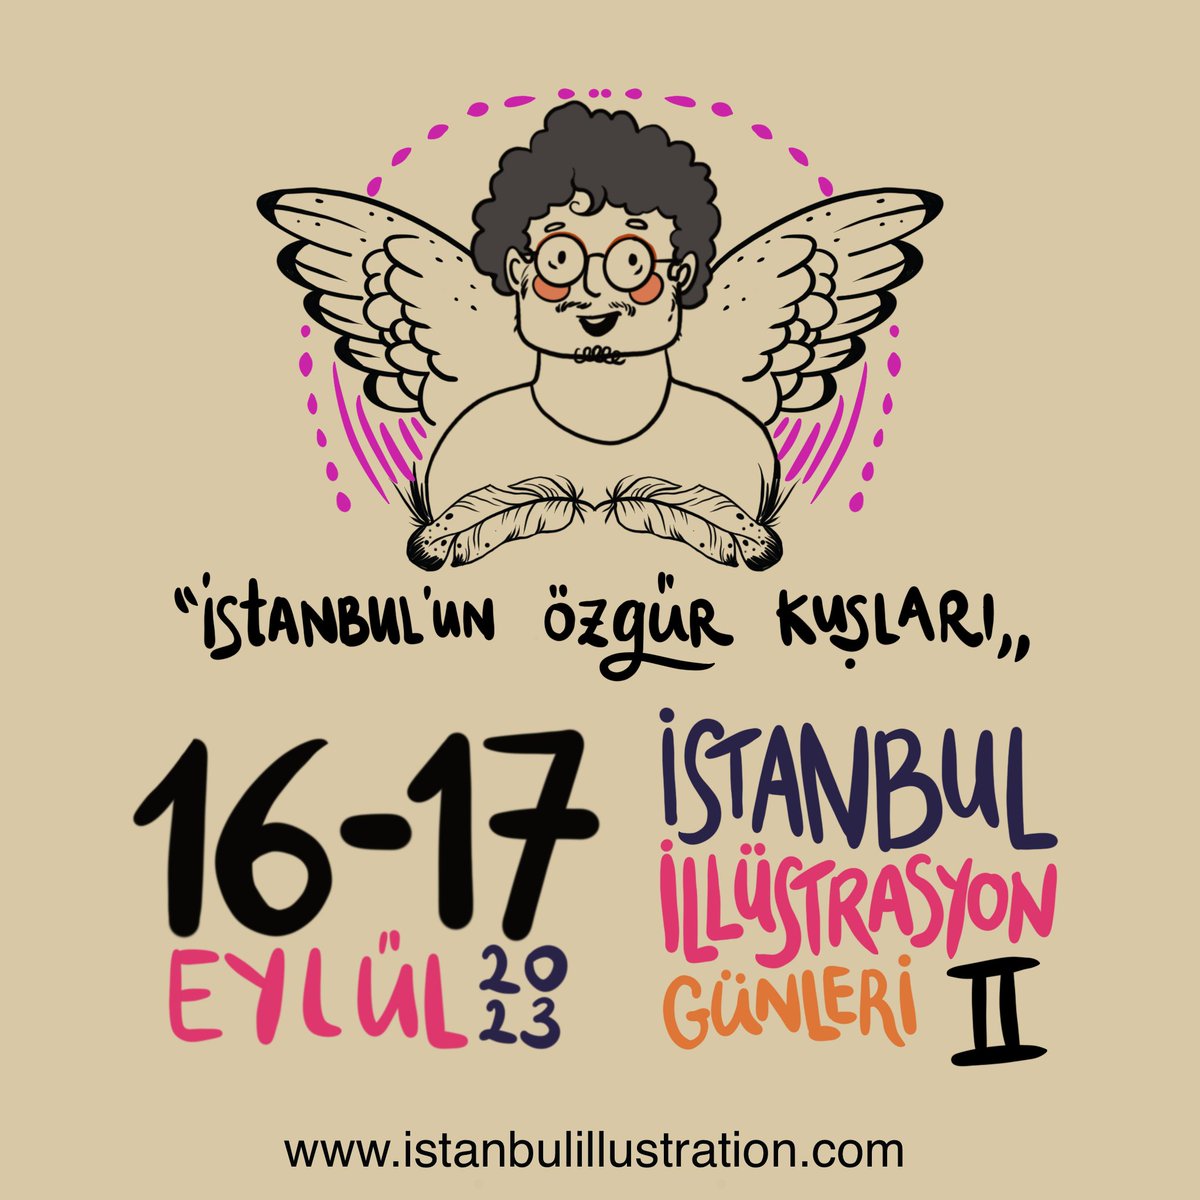 İstanbul İllüstrasyon Günleri Eylül'de... Yakında detaylı açıklama (konferans ve çizim etkinliği) ve program yapılacak. Bu seneki tema 'İstanbul'un Özgür Kuşları'... @istanbul_days #illüstrasyon #istanbulillustrationdays #illustration